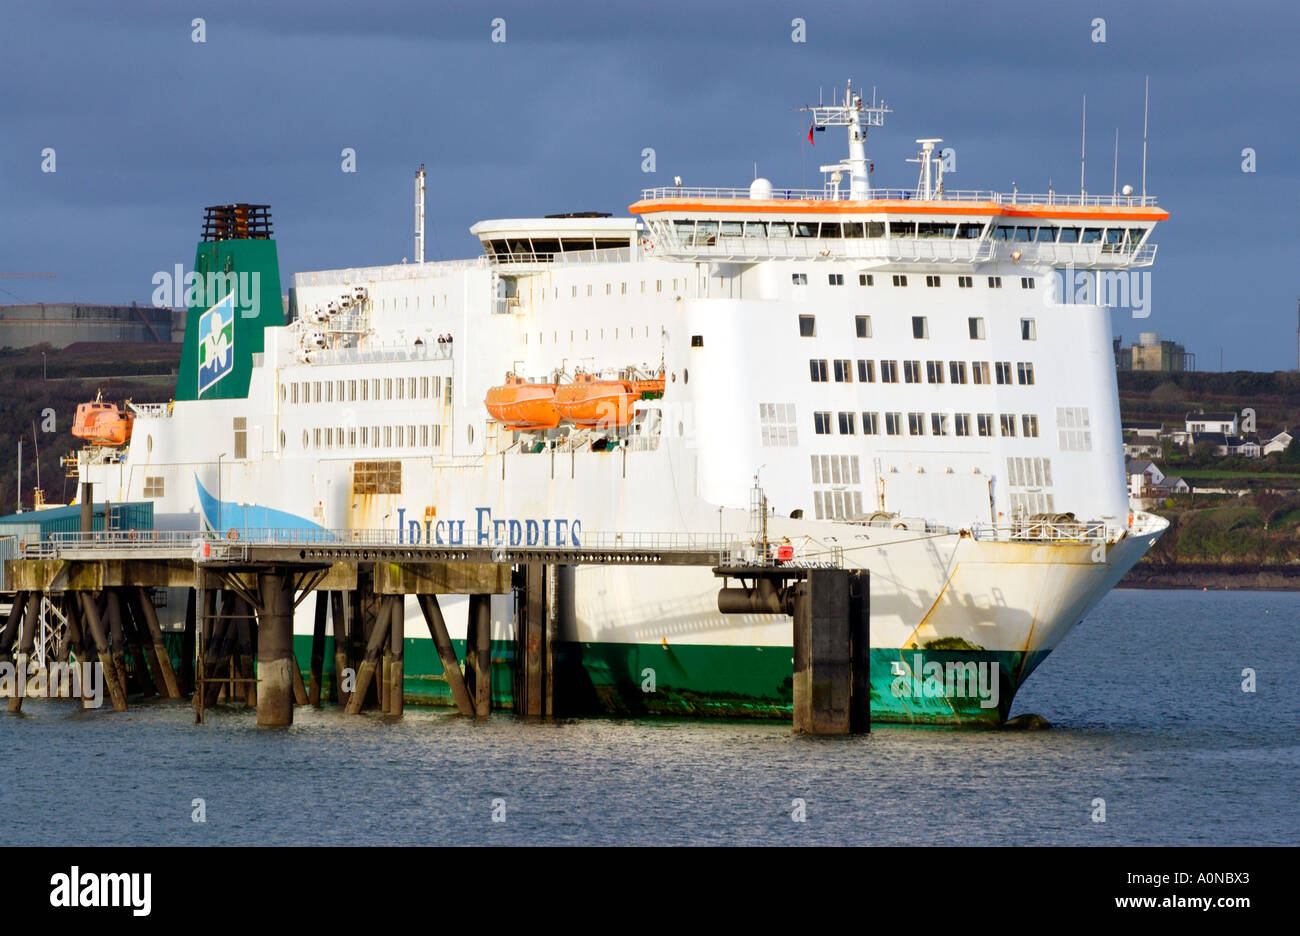 Irish Ferries Isle of Inishmore veicolo e traghetti passeggeri Ormeggiata al pontile in Pembroke Dock, Pembrokeshire, West Wales, Regno Unito Foto Stock